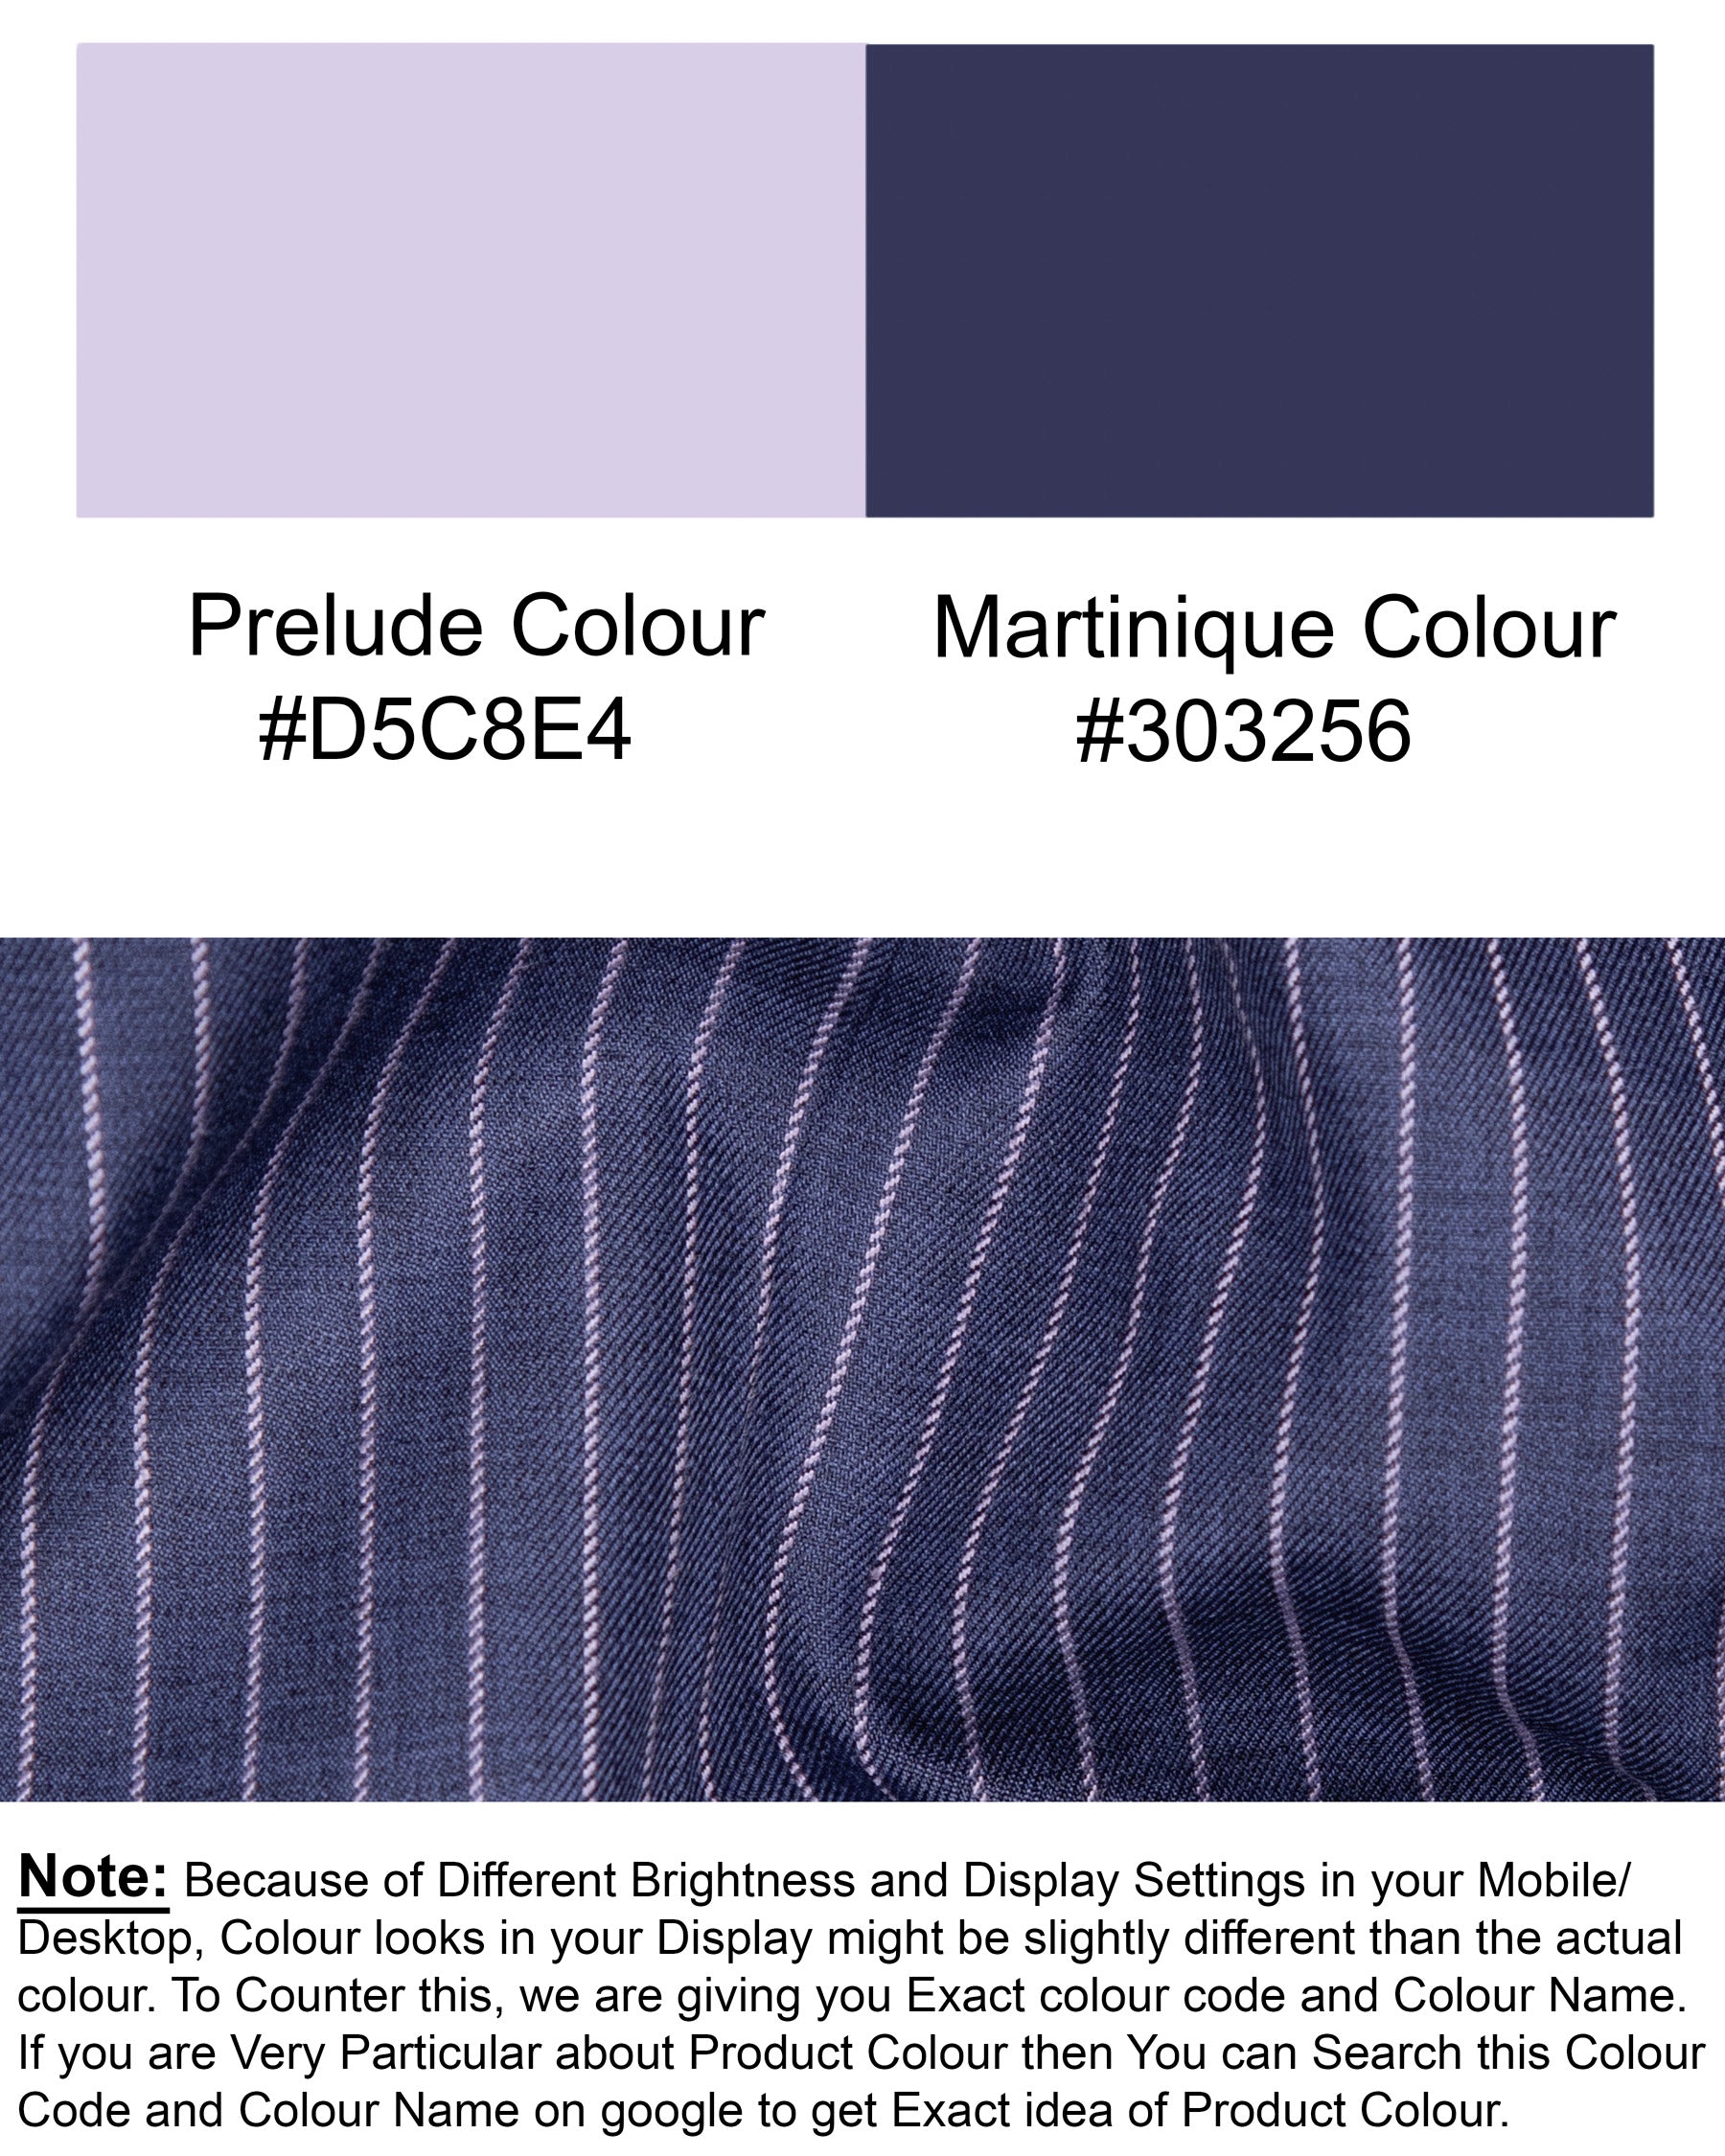 Martinique Blue with Prelude Striped Premium Cotton Waistcoat V1298-36, V1298-38, V1298-40, V1298-42, V1298-44, V1298-46, V1298-48, V1298-50, V1298-52, V1298-54, V1298-56, V1298-58, V1298-60